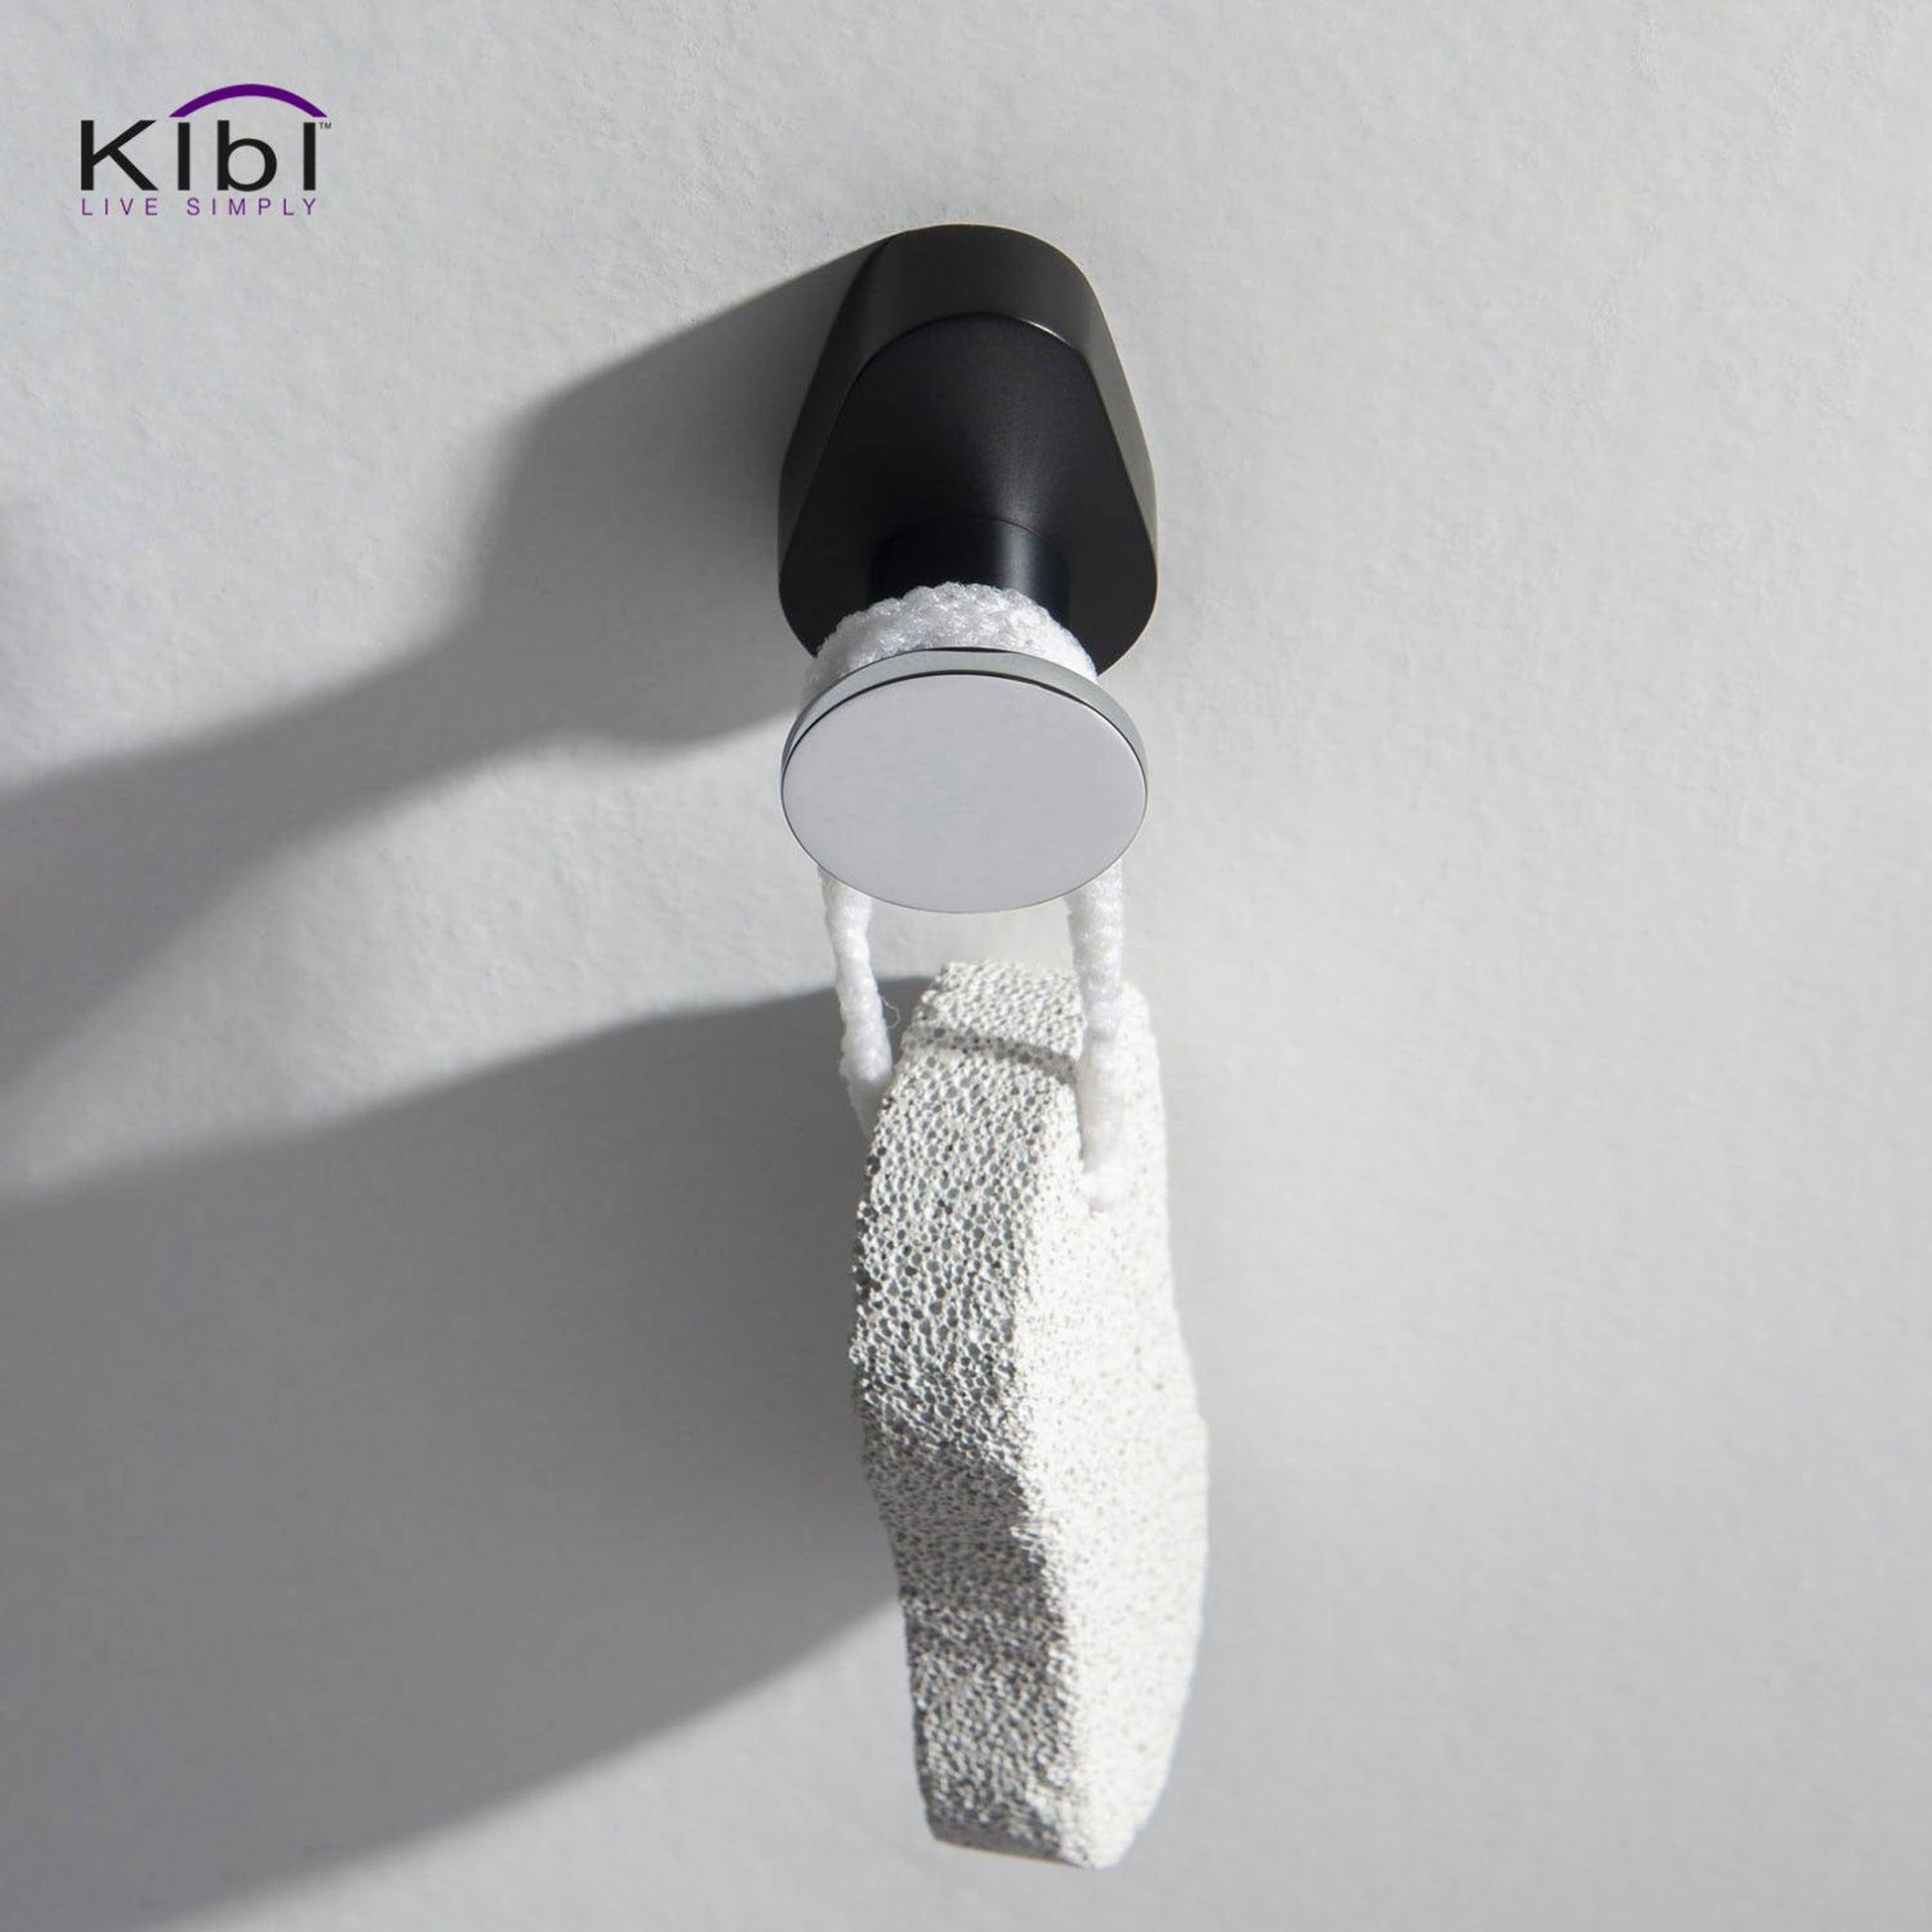 KIBI Volcano Bathroom Robe Hook in Chrome Black Finish